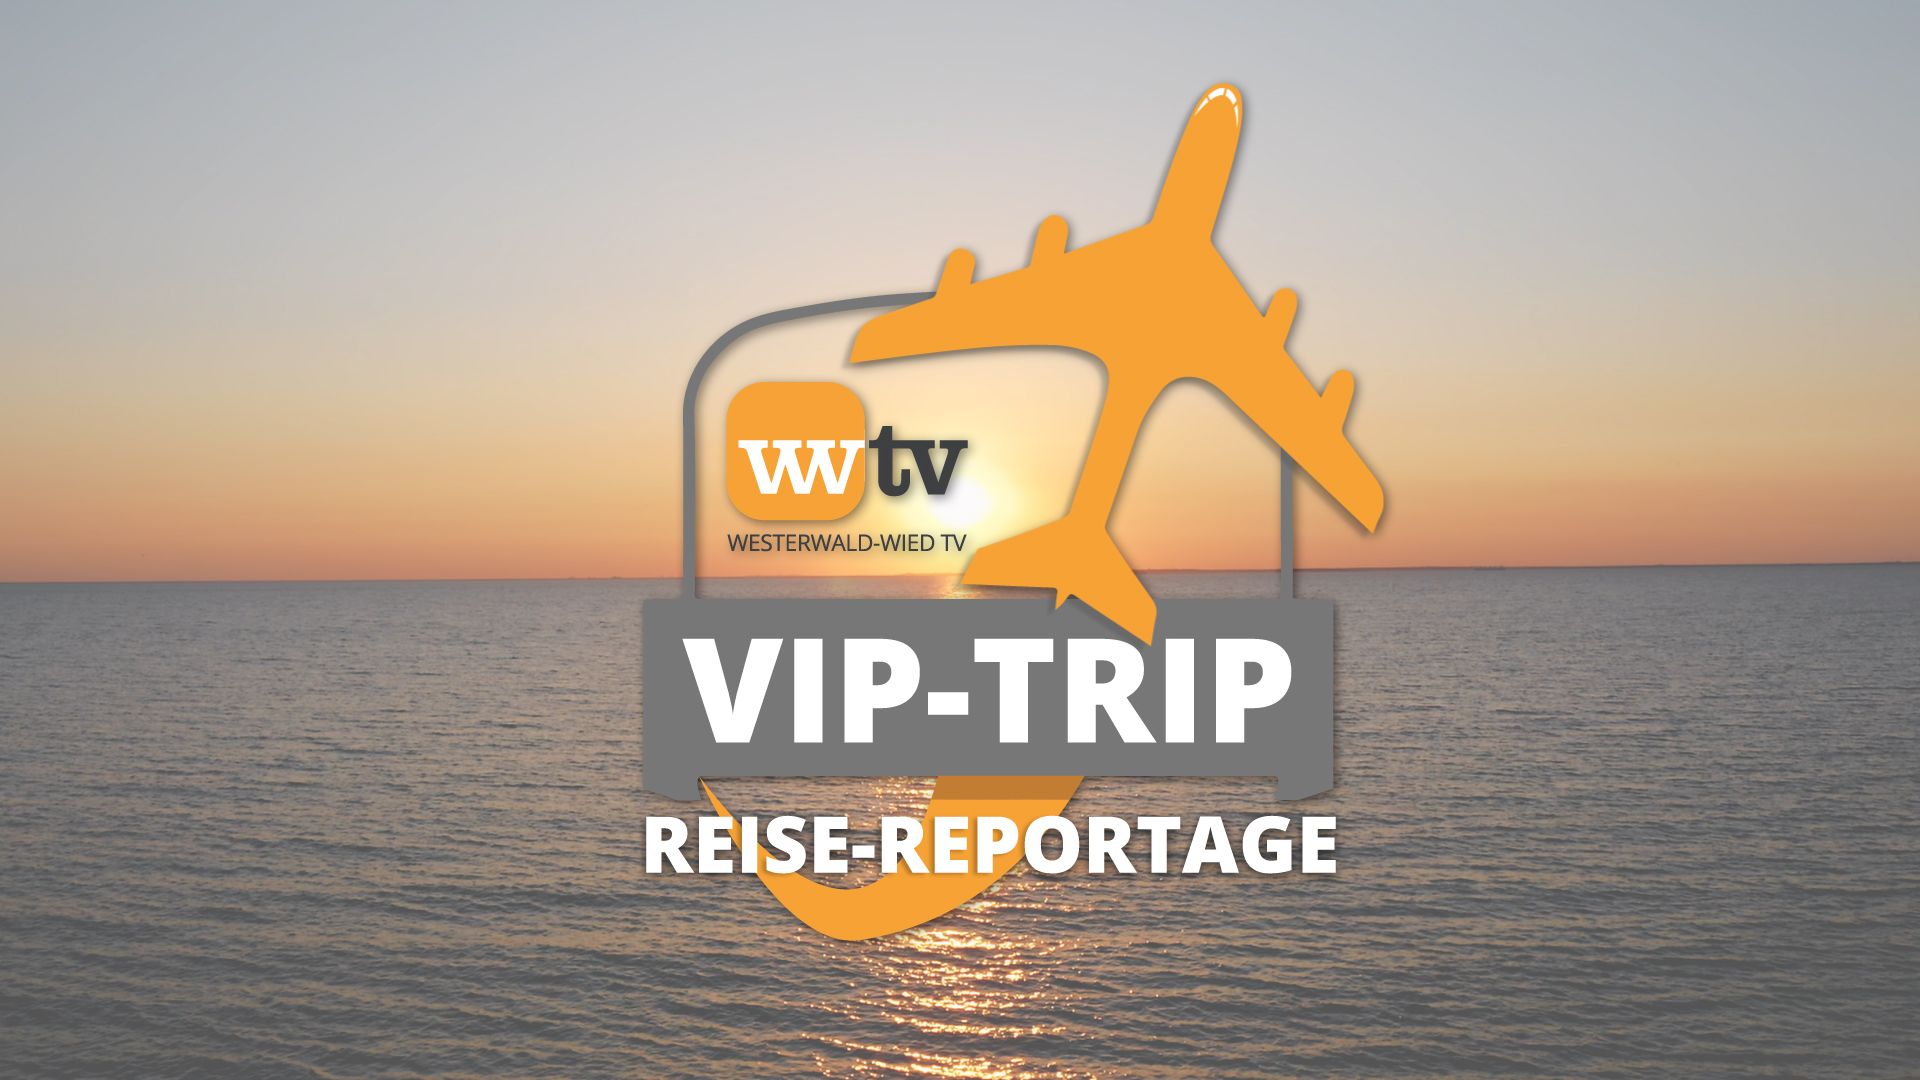 VIP-Trip | Die Reise-Reportage von WWTV